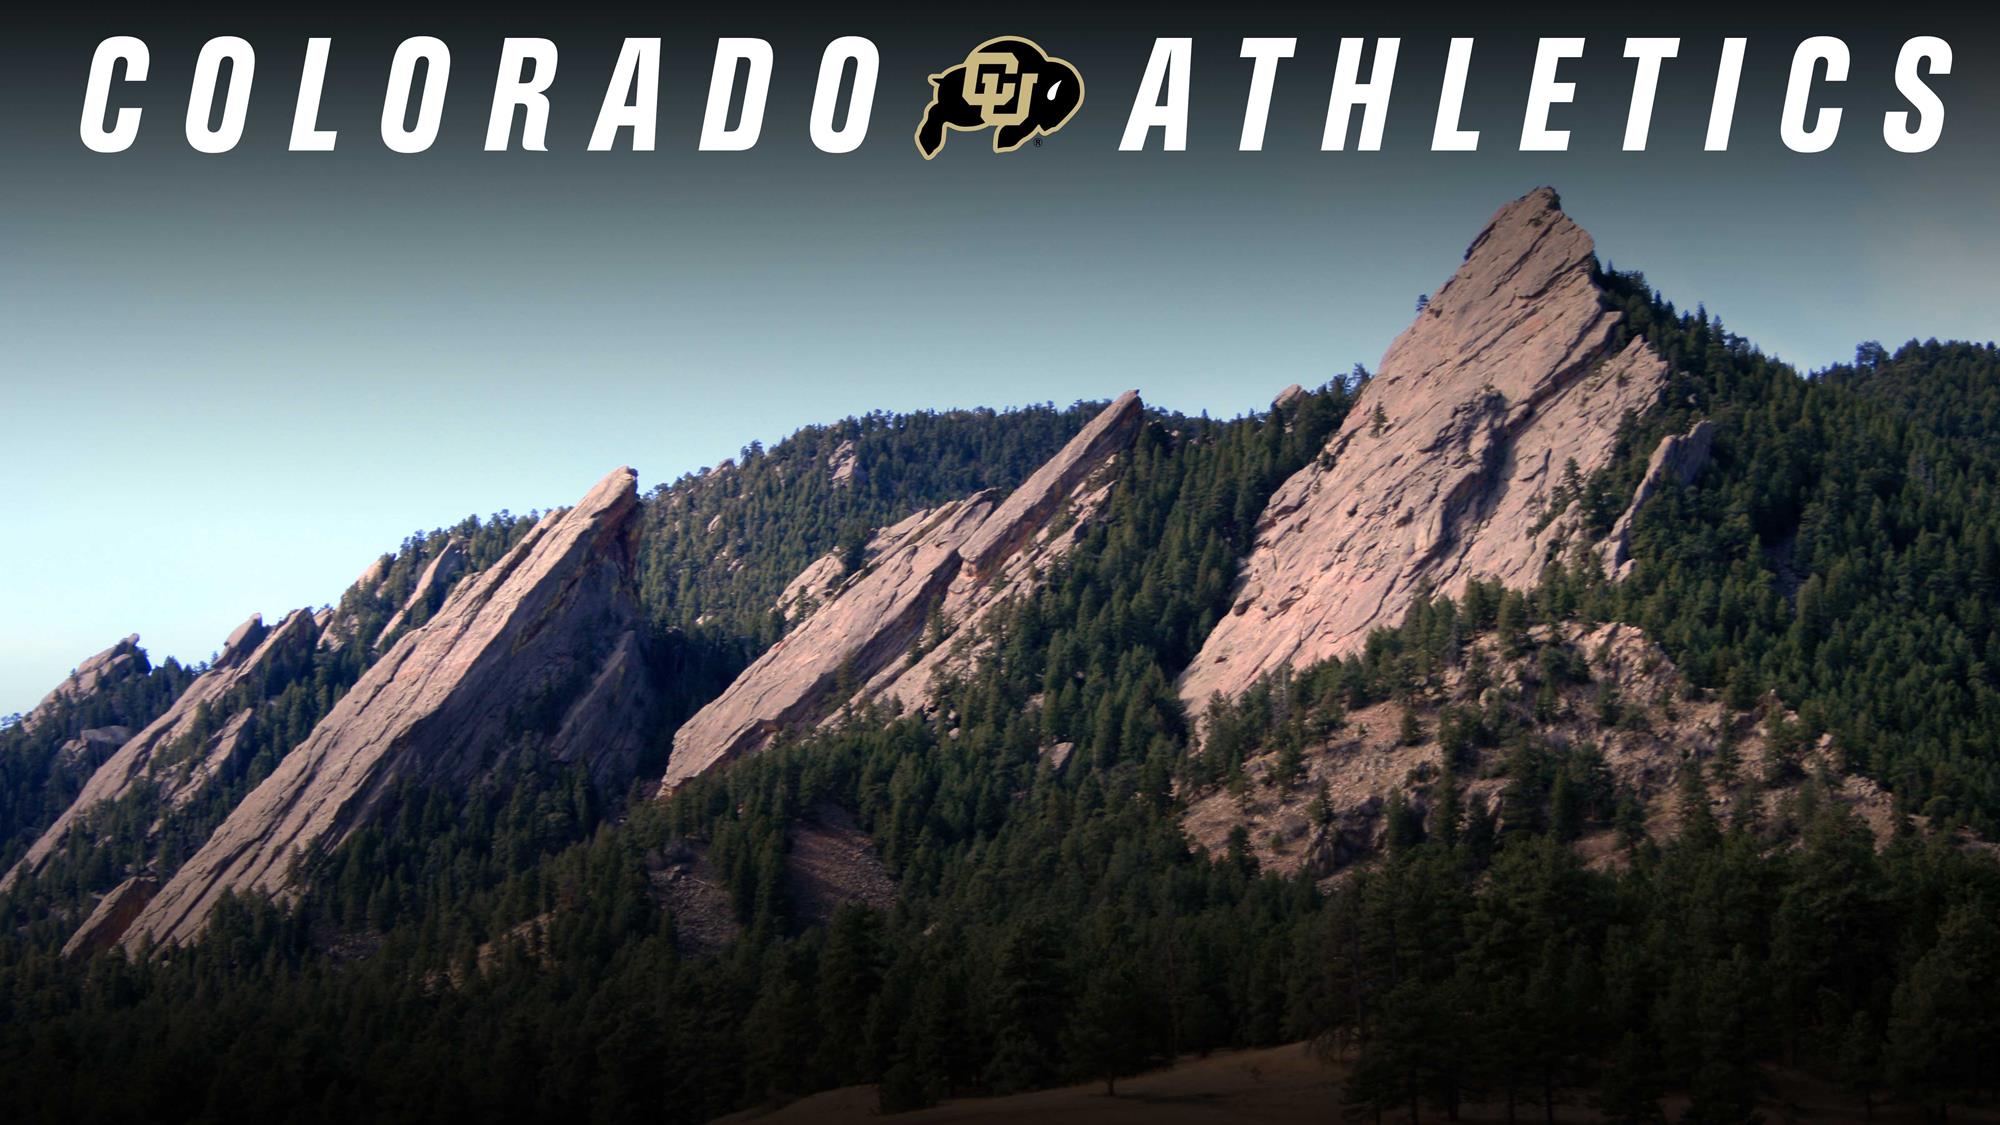 Colorado Athletics logo and the Flatirons